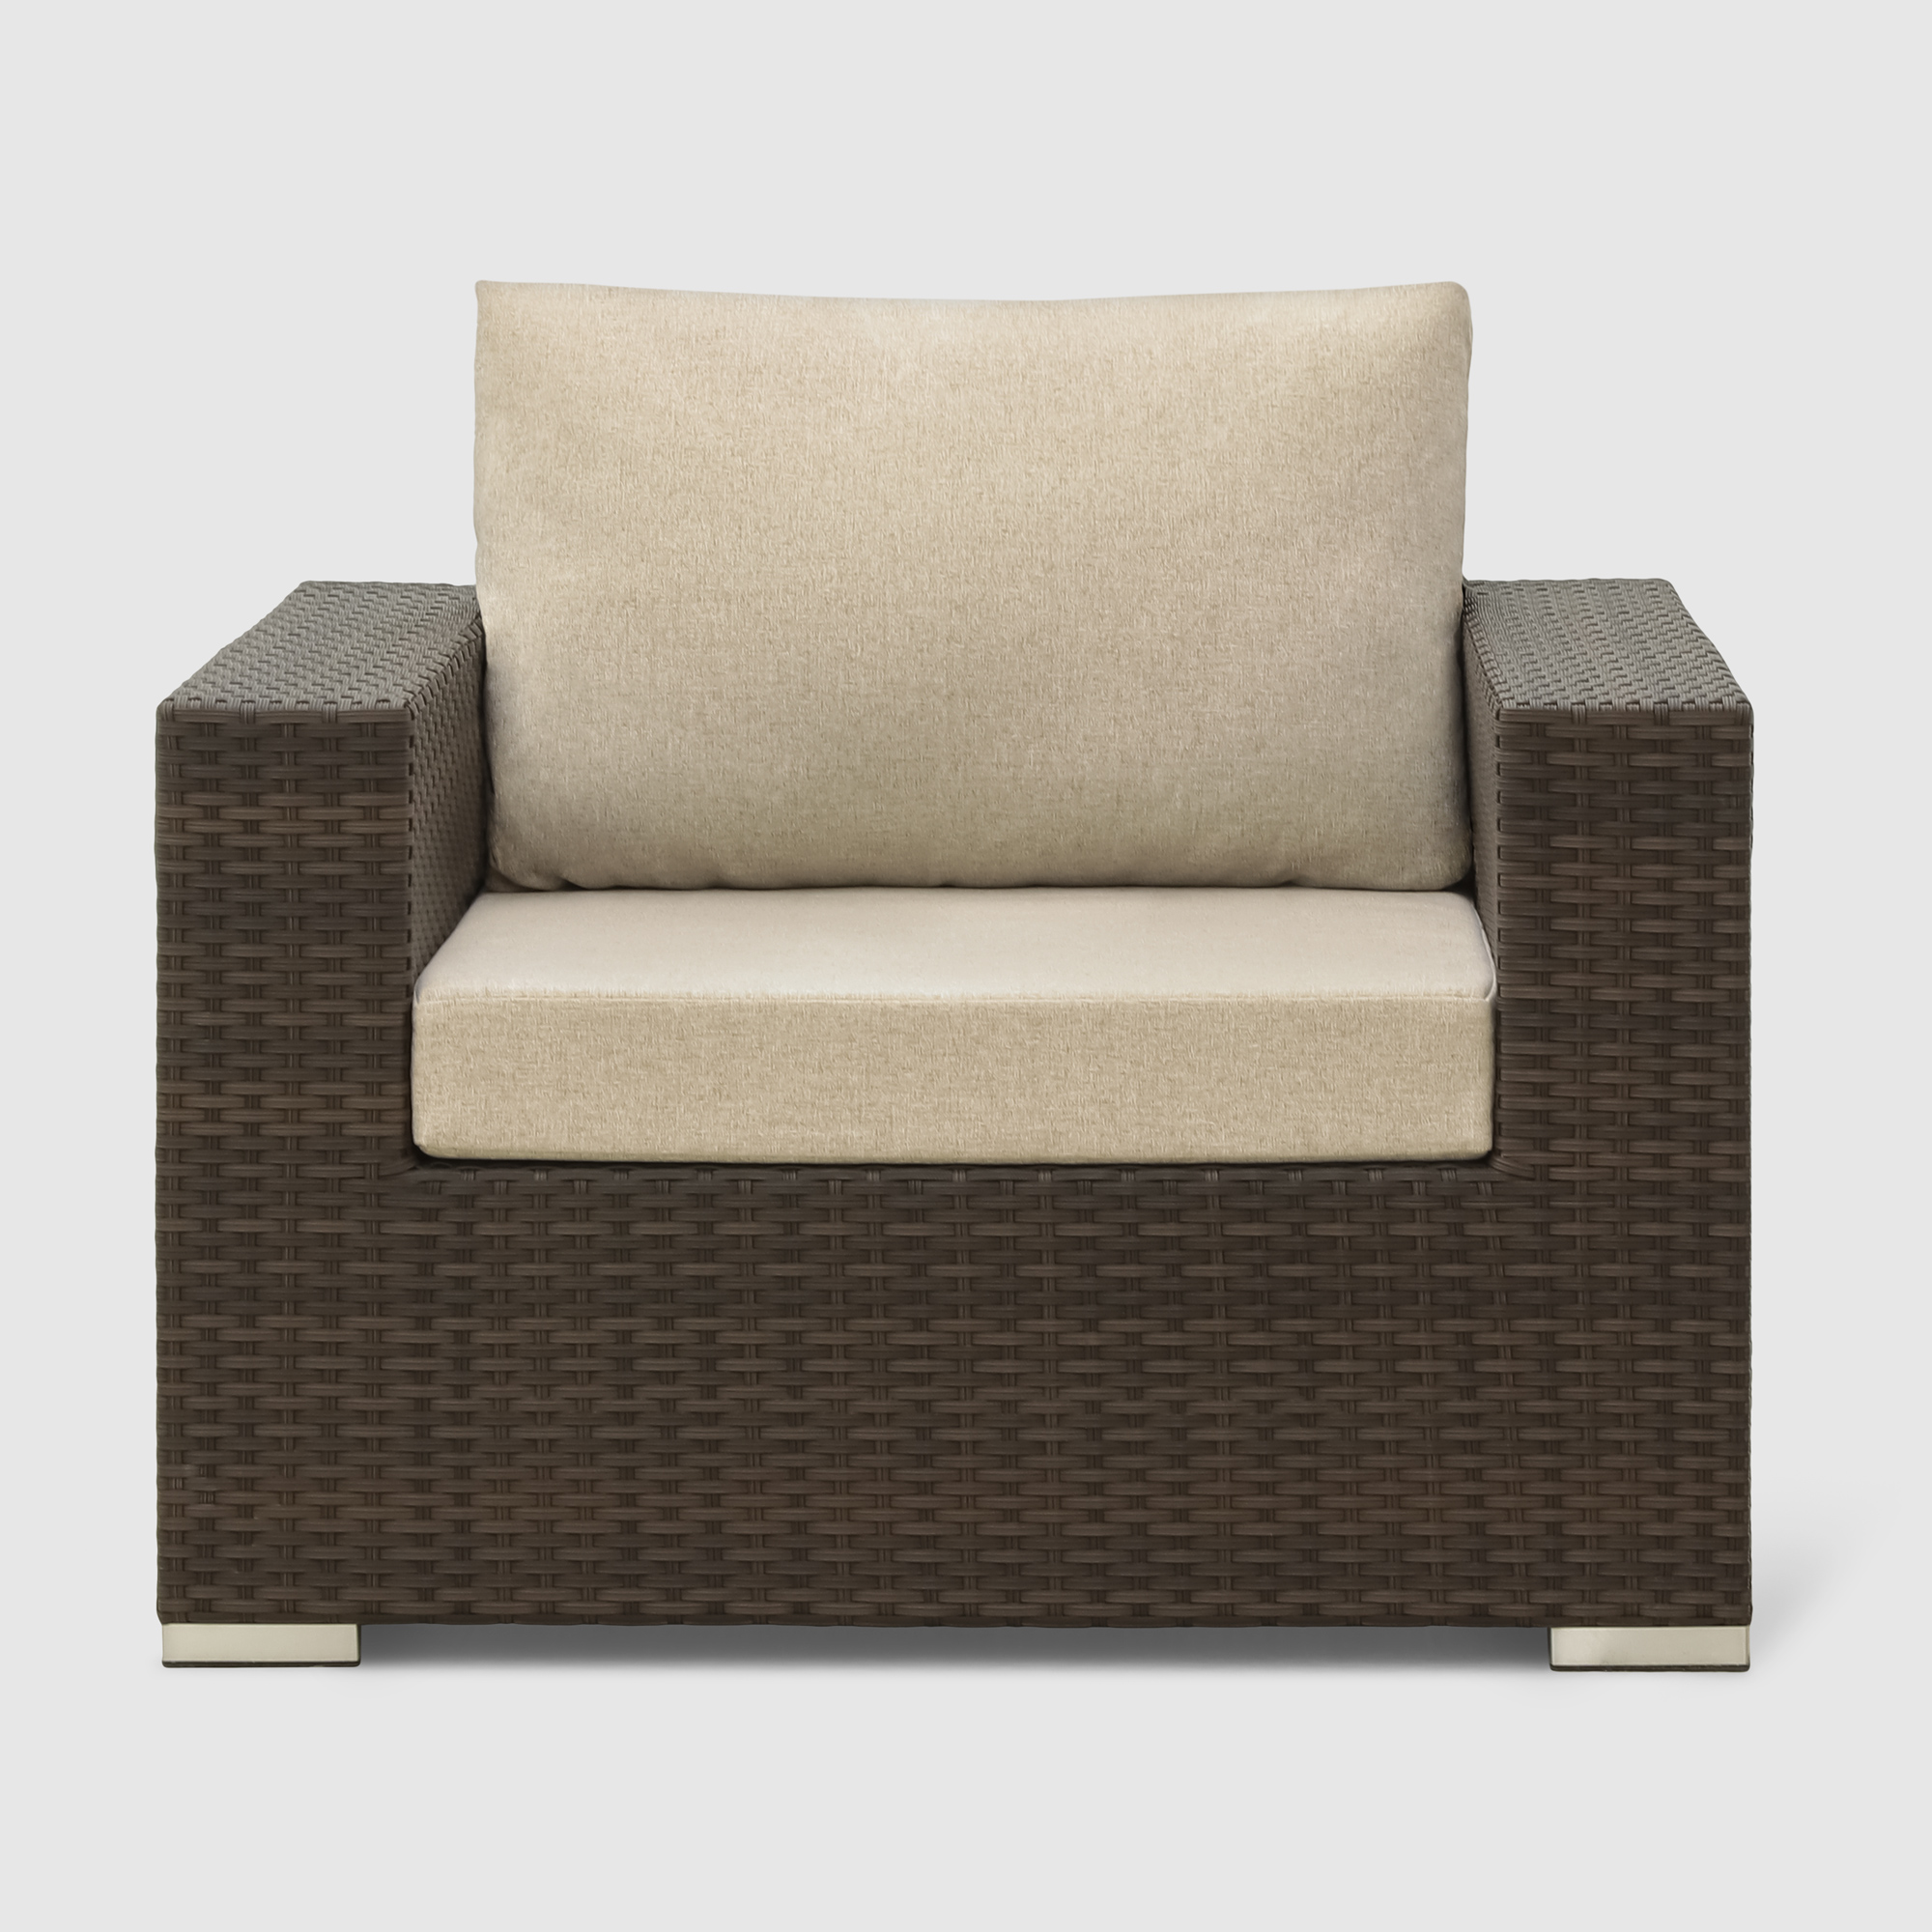 Комплект мебели Mavi rattan 4 предмета (041-036dky), цвет коричневый - фото 11